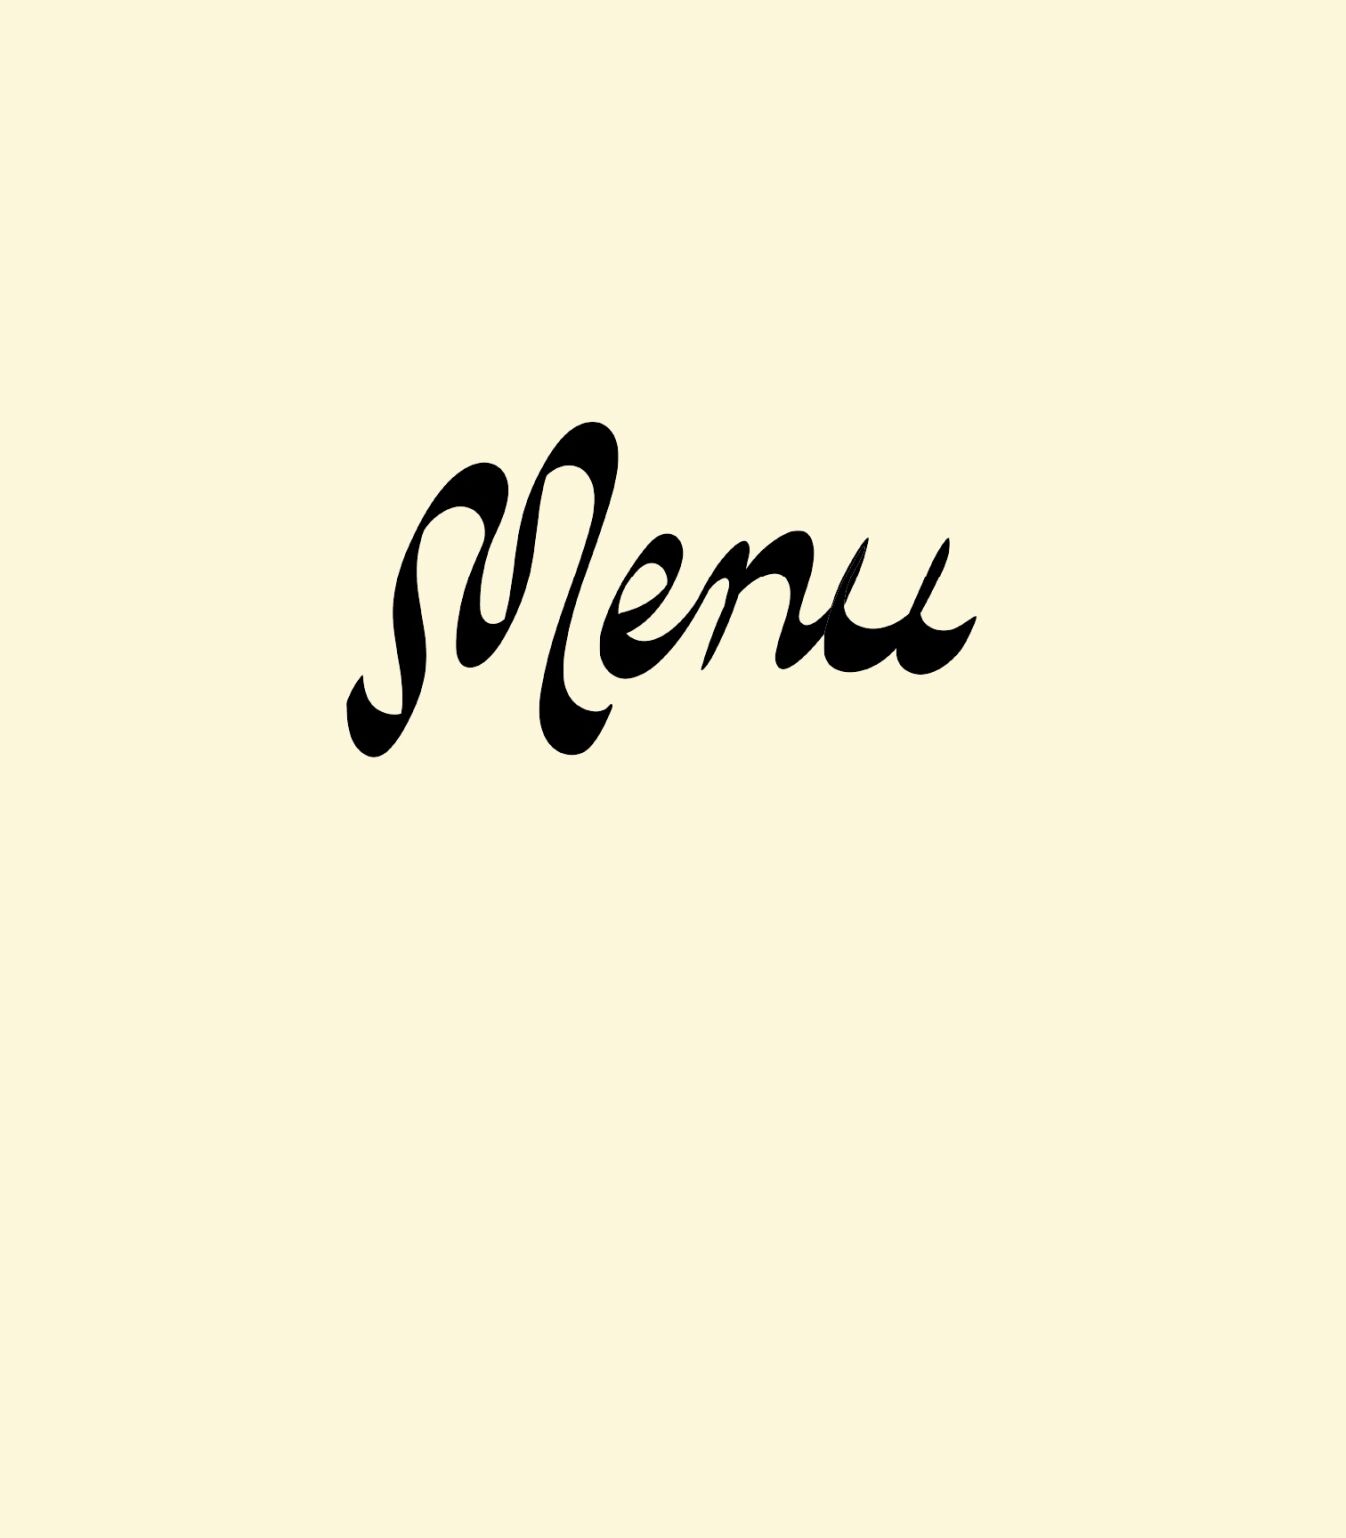 Mabel's menu